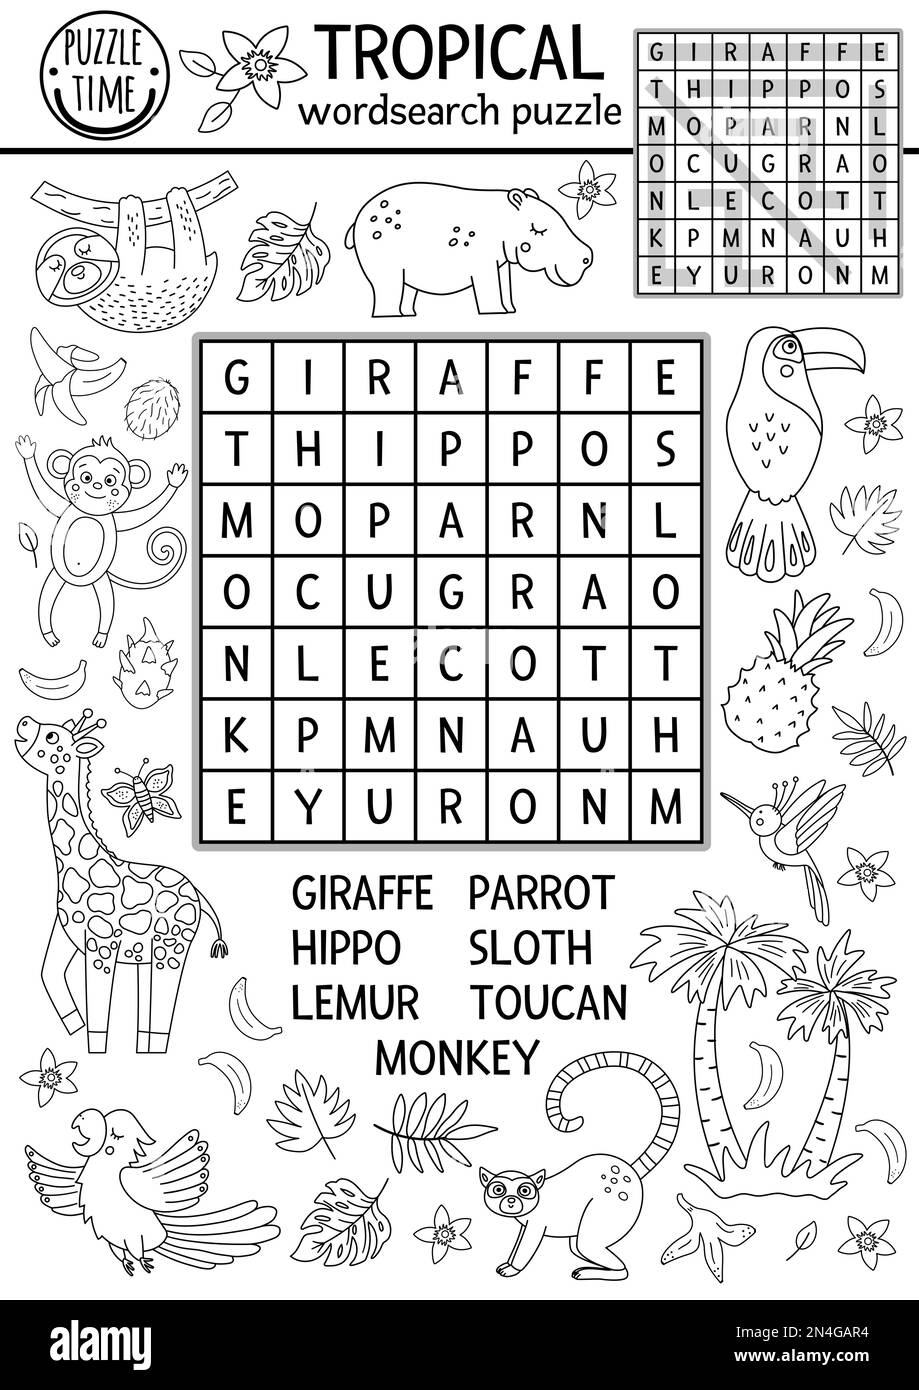 Puzzle vettoriale in bianco e nero tropicale wordsearch per bambini. Semplice crocevia estiva con animali esotici e uccelli per bambini. Attività con parola chiave Illustrazione Vettoriale